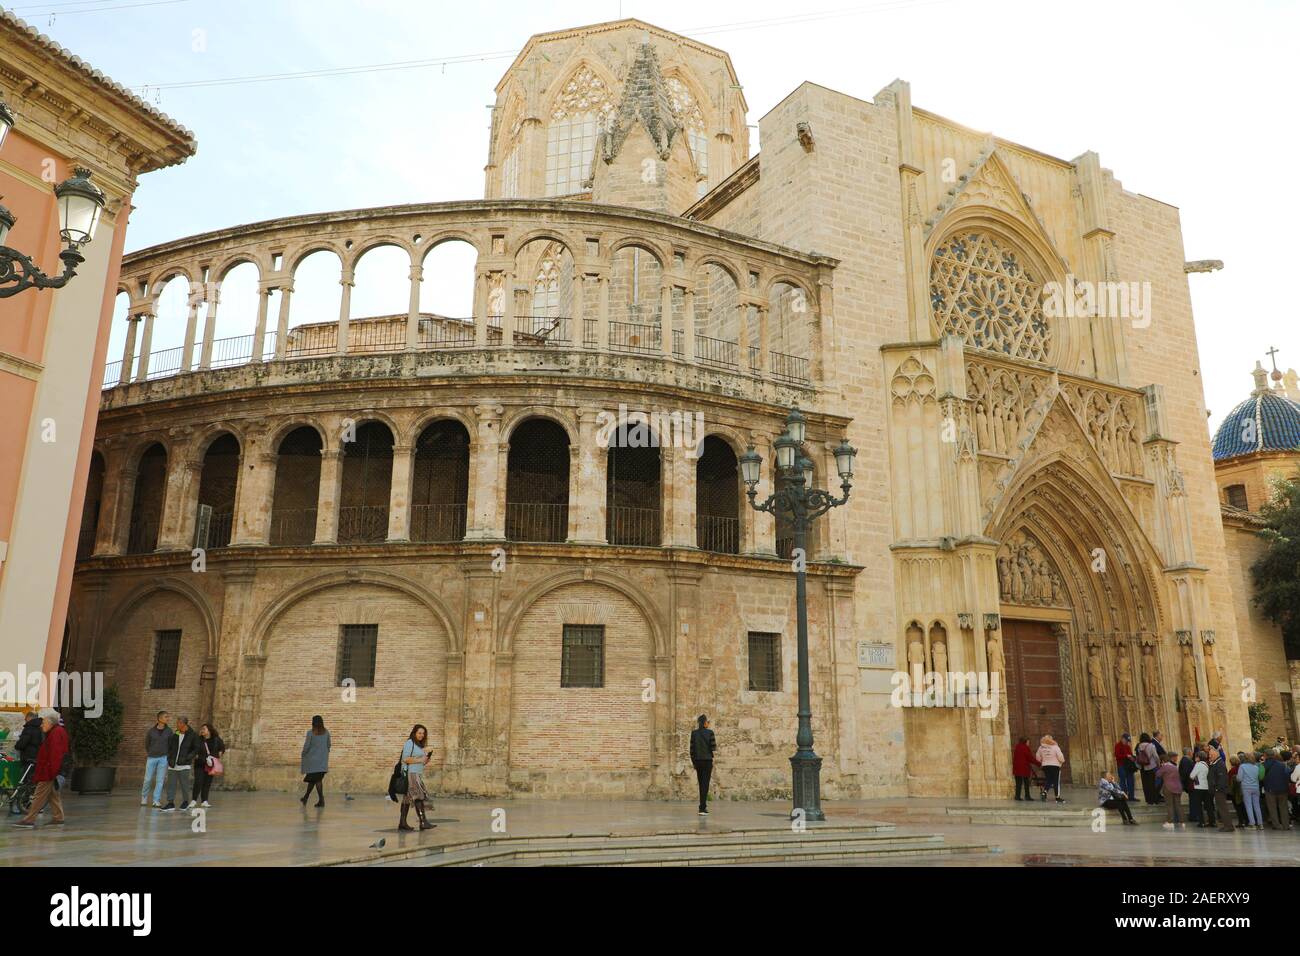 VALENCIA, Espagne - NOVEMER 27, 2019 : la cathédrale de Valence avec les touristes visite, Espagne Banque D'Images